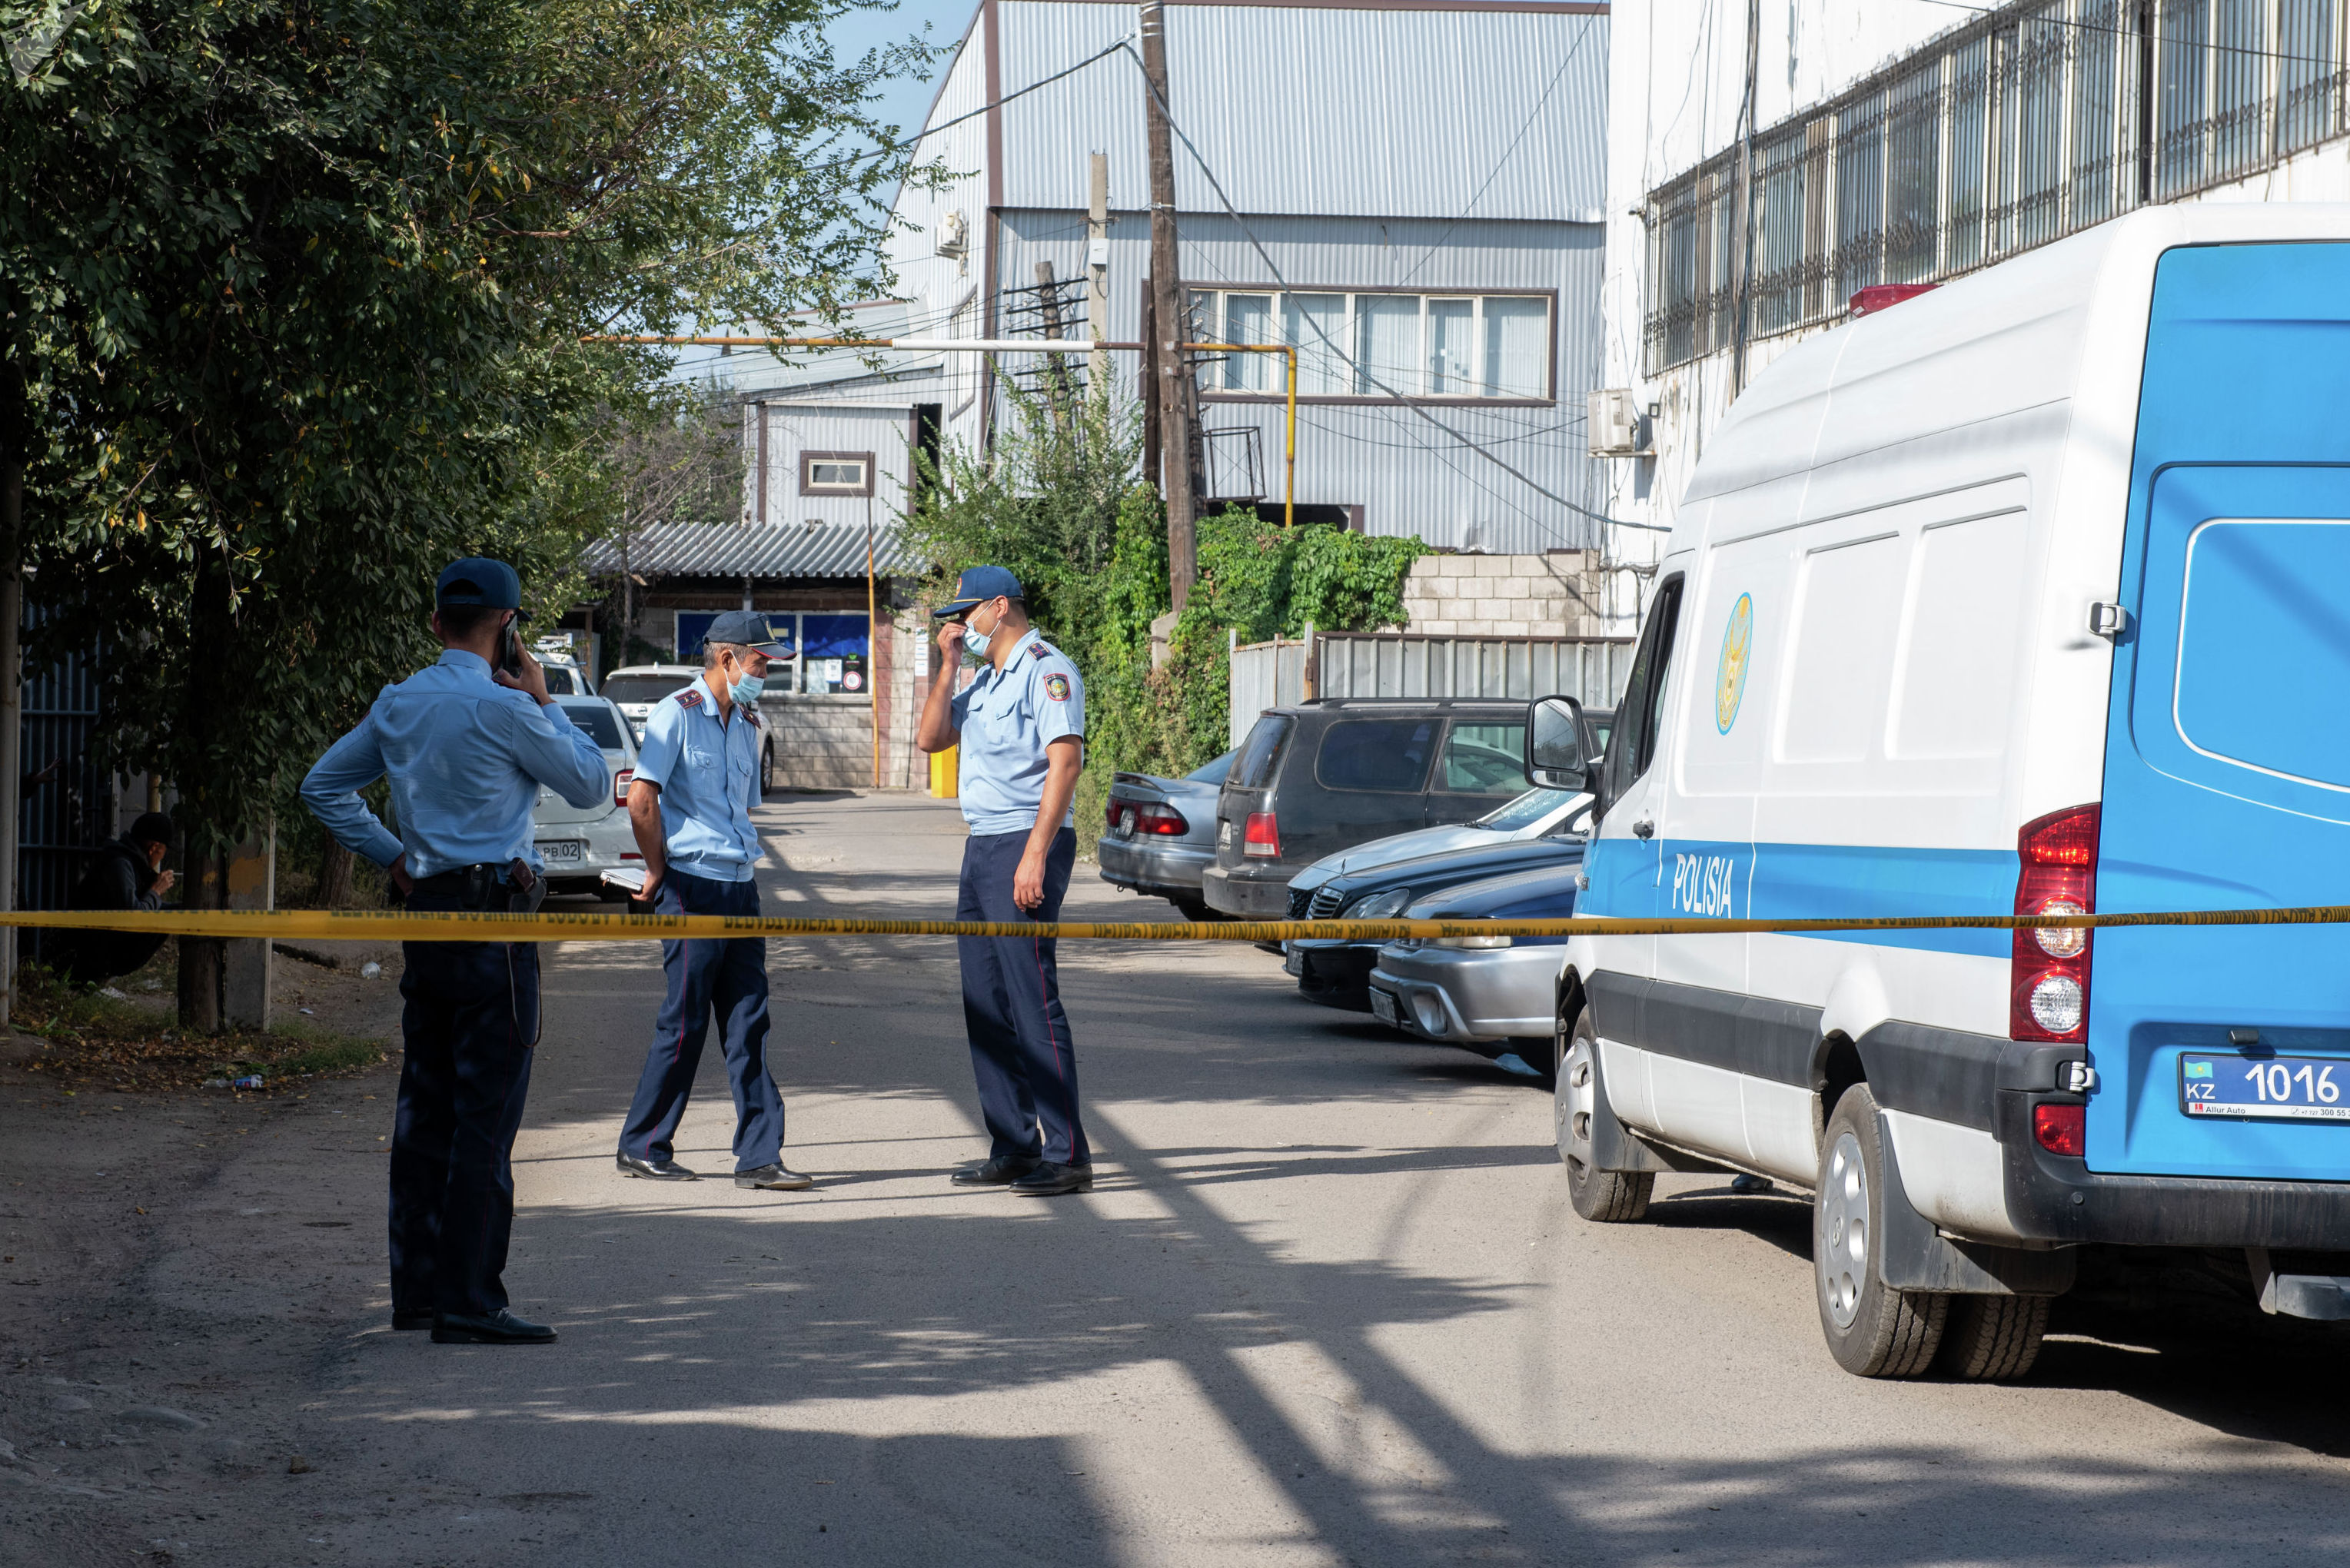 Алматинец расстрелял пять человек, в том числе двух полицейских и судисполнителя. Фото с места событий